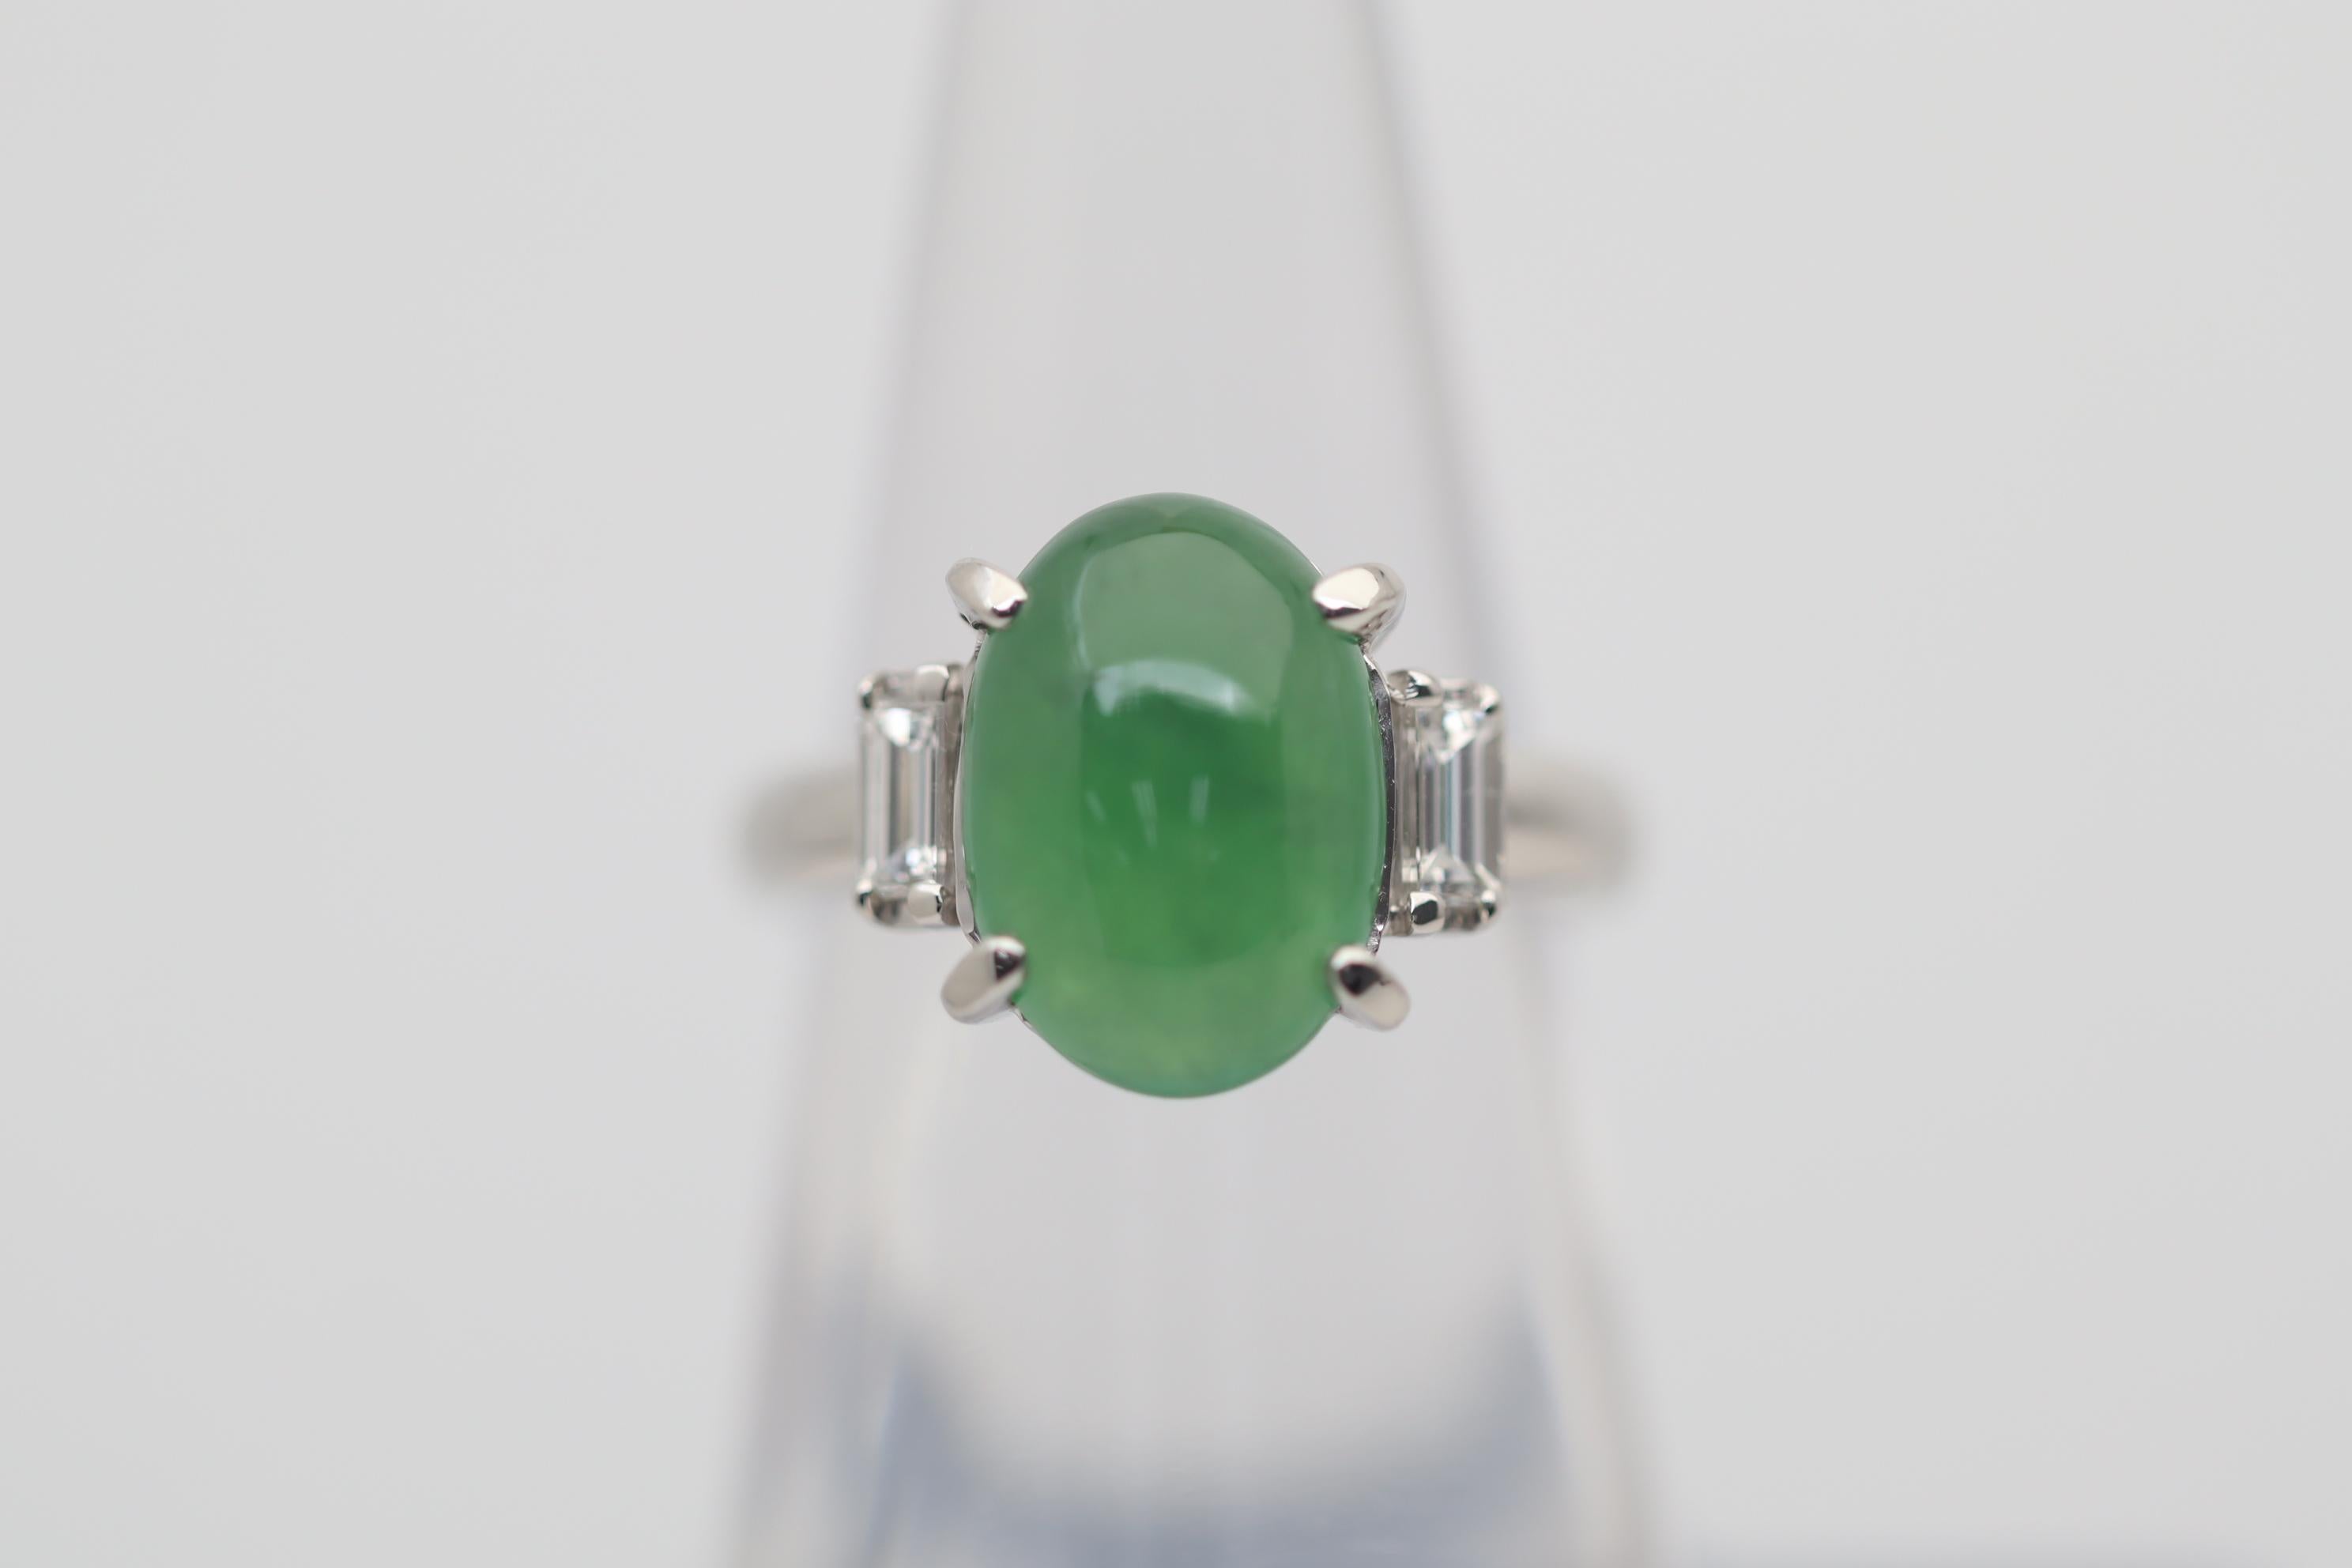 Une bague classique à 3 pierres présentant un beau morceau de jade naturel. Elle pèse 4,71 carats et possède une riche couleur verte ainsi qu'une grande translucidité qui fait briller la pierre à la lumière. Elle est complétée par 2 diamants